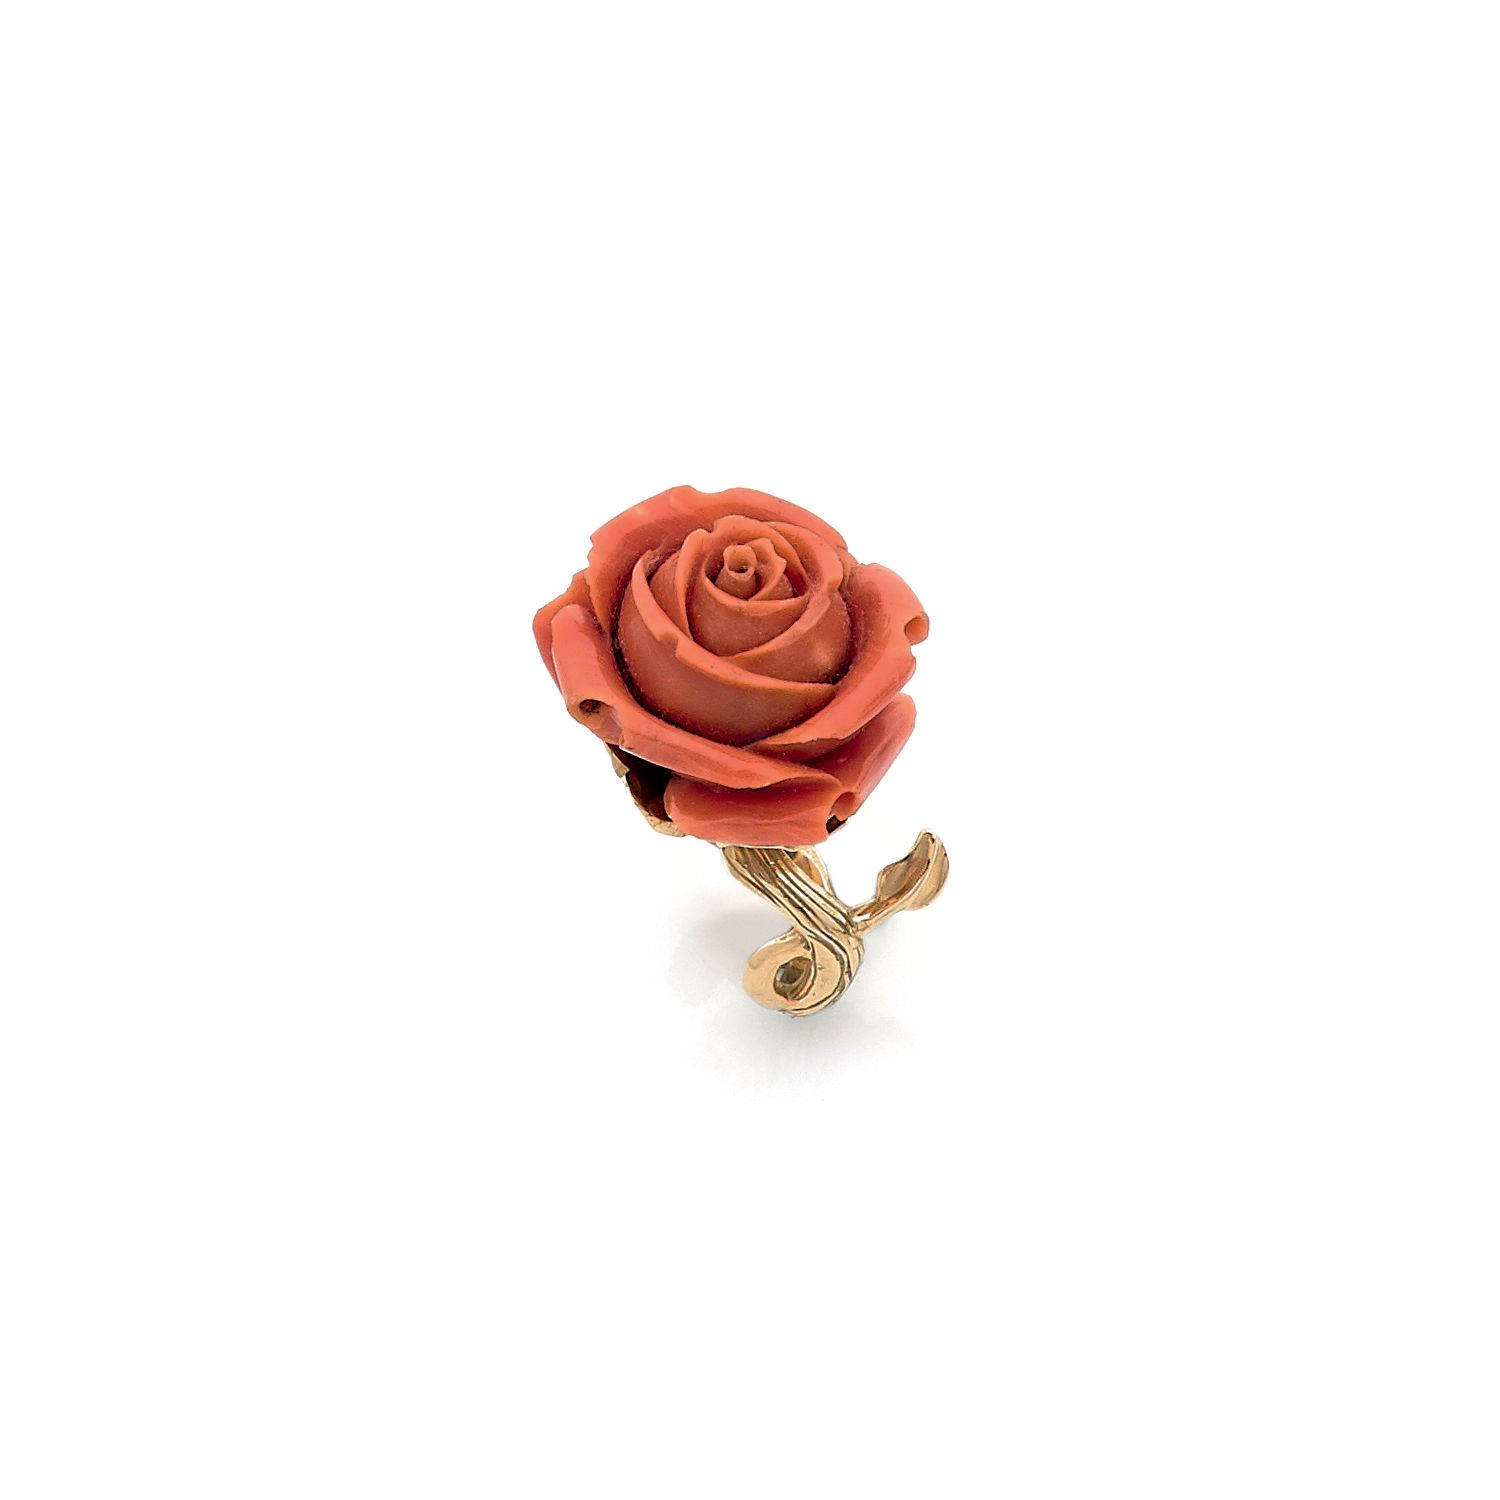 Null Sylvie CORBELIN

一枚18K（750‰）黄金戒指，镶嵌有雕刻的珊瑚玫瑰花

手指大小模仿玫瑰的茎，花冠是四叶草的形状

有图案的

梯&hellip;